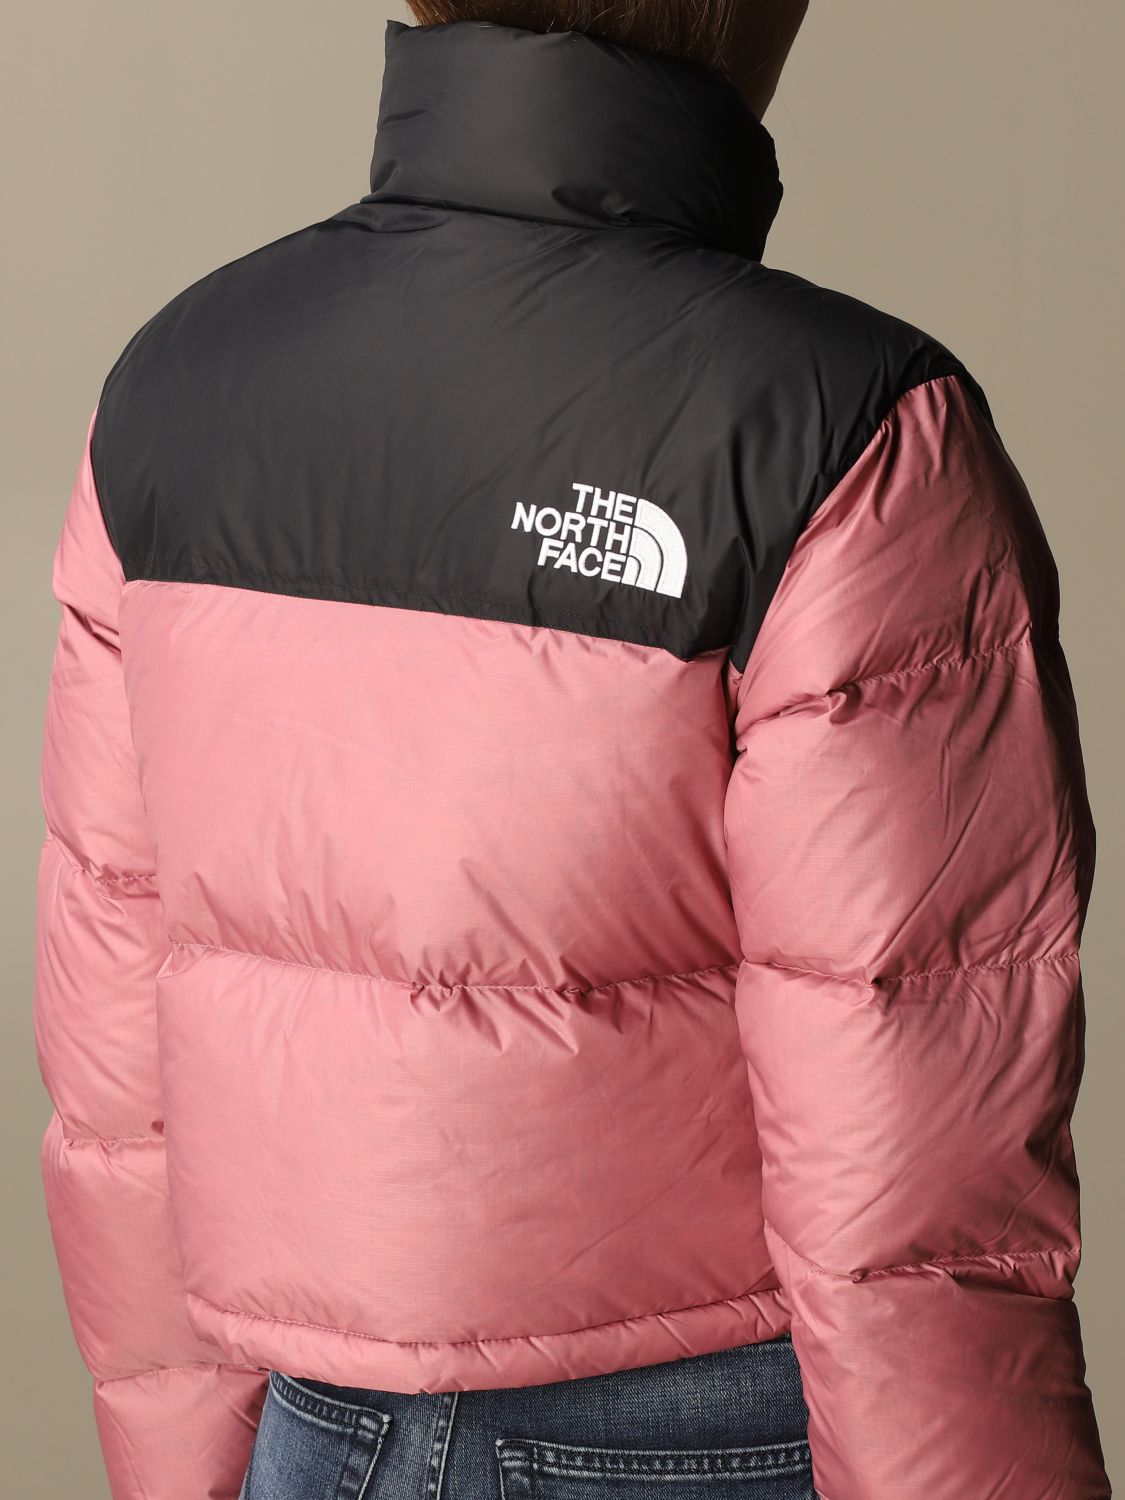 north face hot pink jacket